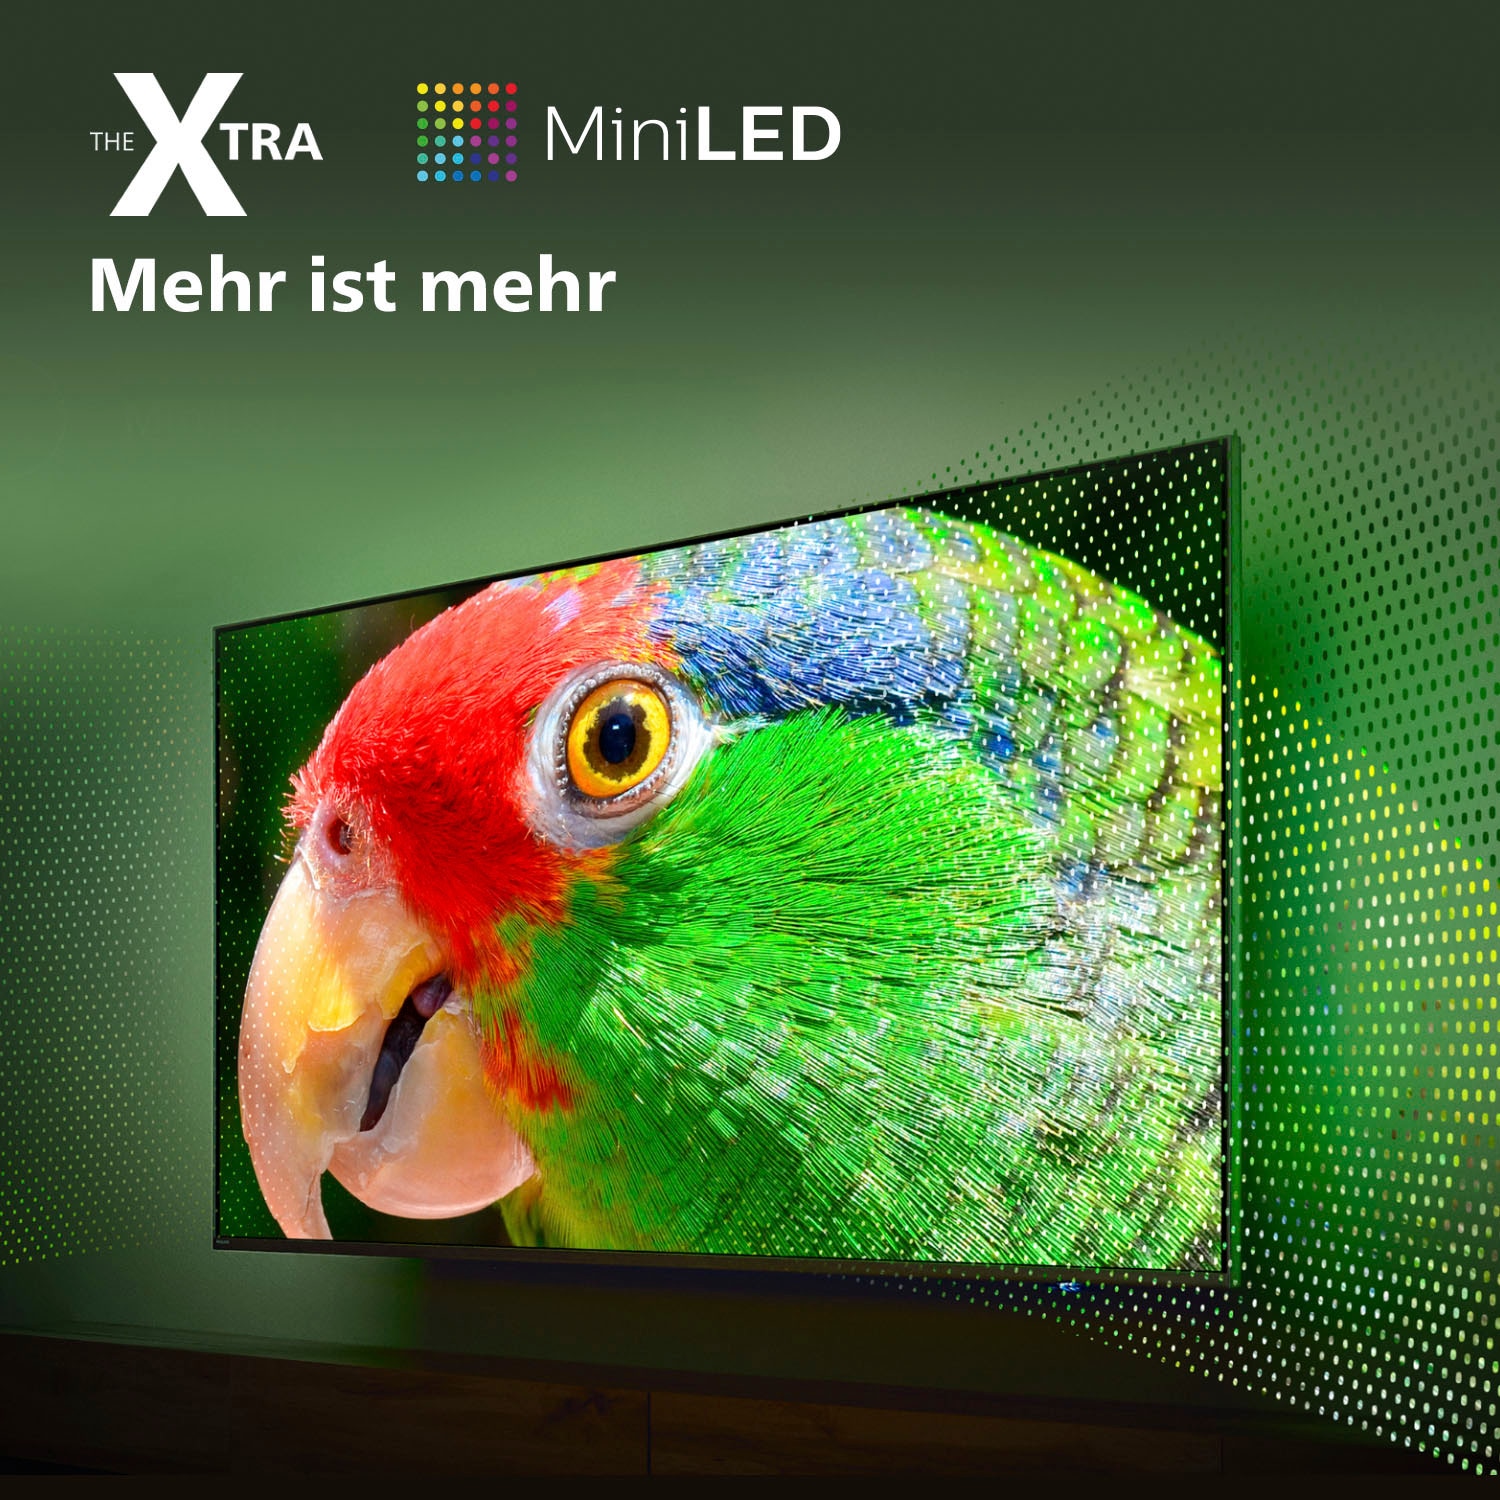 TV MiniLED 55 (139,7 cm) Philips 55PML9008/12, 4K UHD, Smart TV